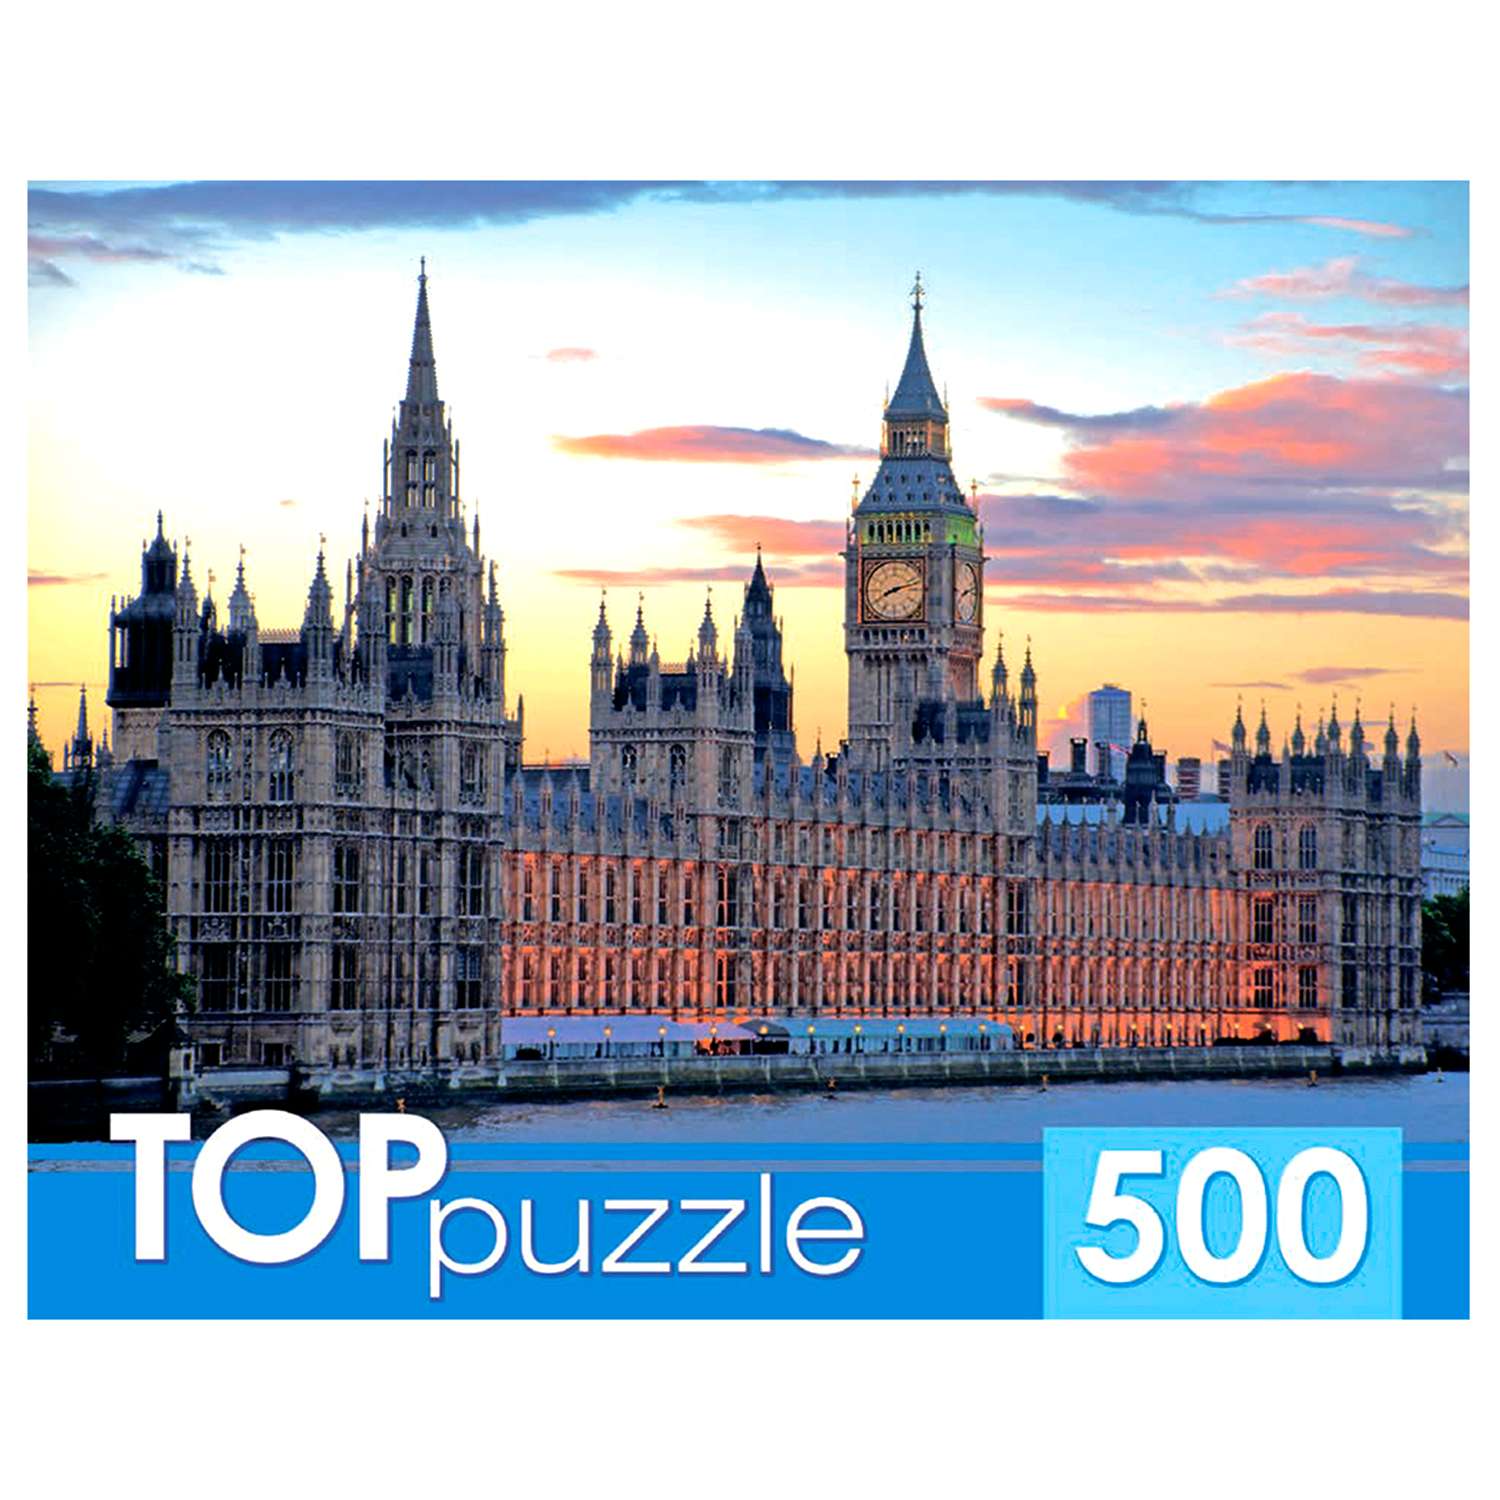 Пазл Рыжий кот TOPpuzzle Лондон Вестминстерский дворец 500 элементов - фото 1